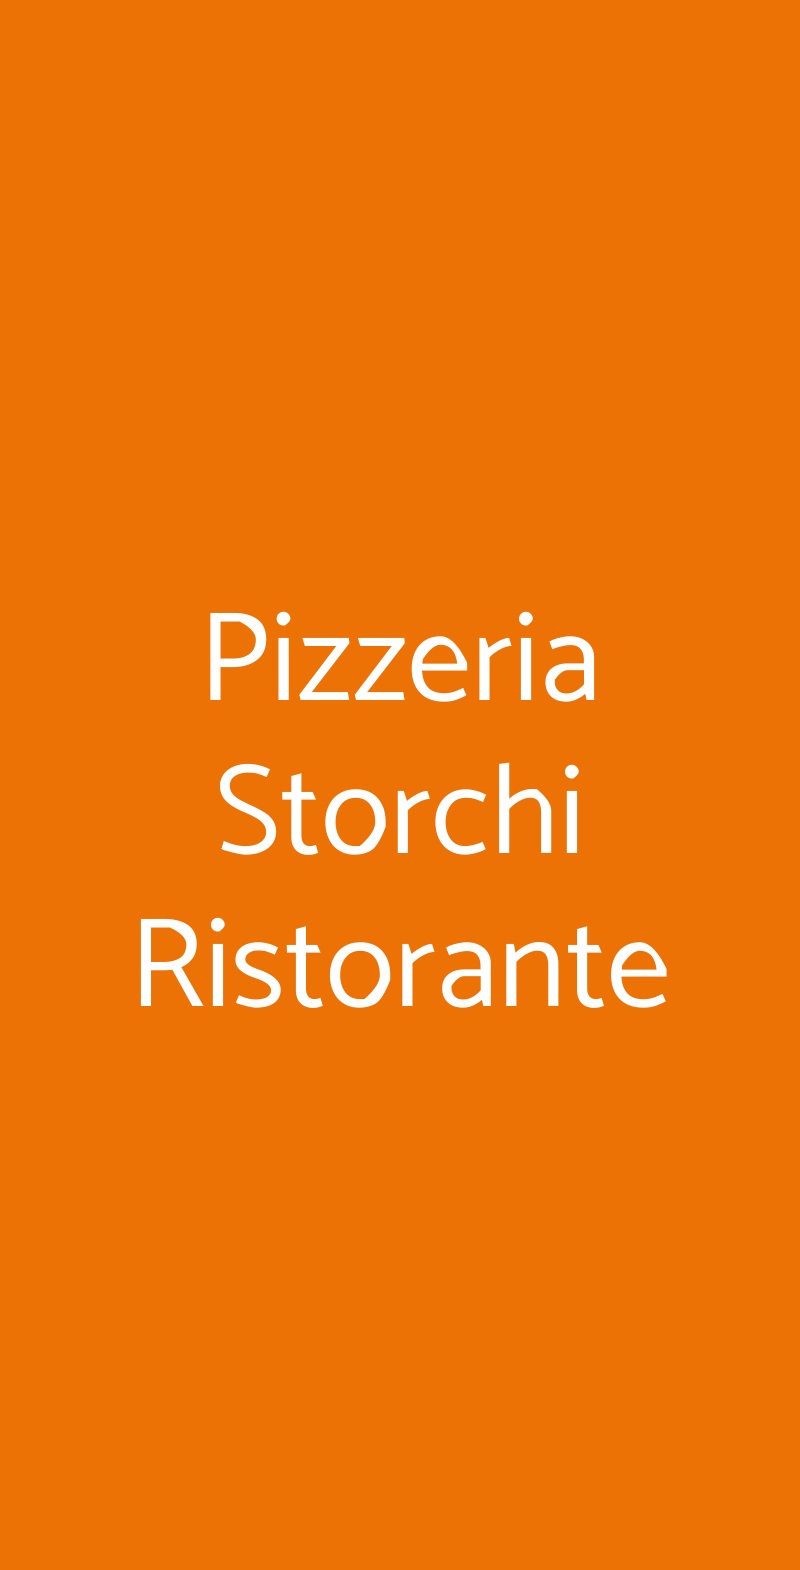 Pizzeria Storchi Ristorante Modena menù 1 pagina